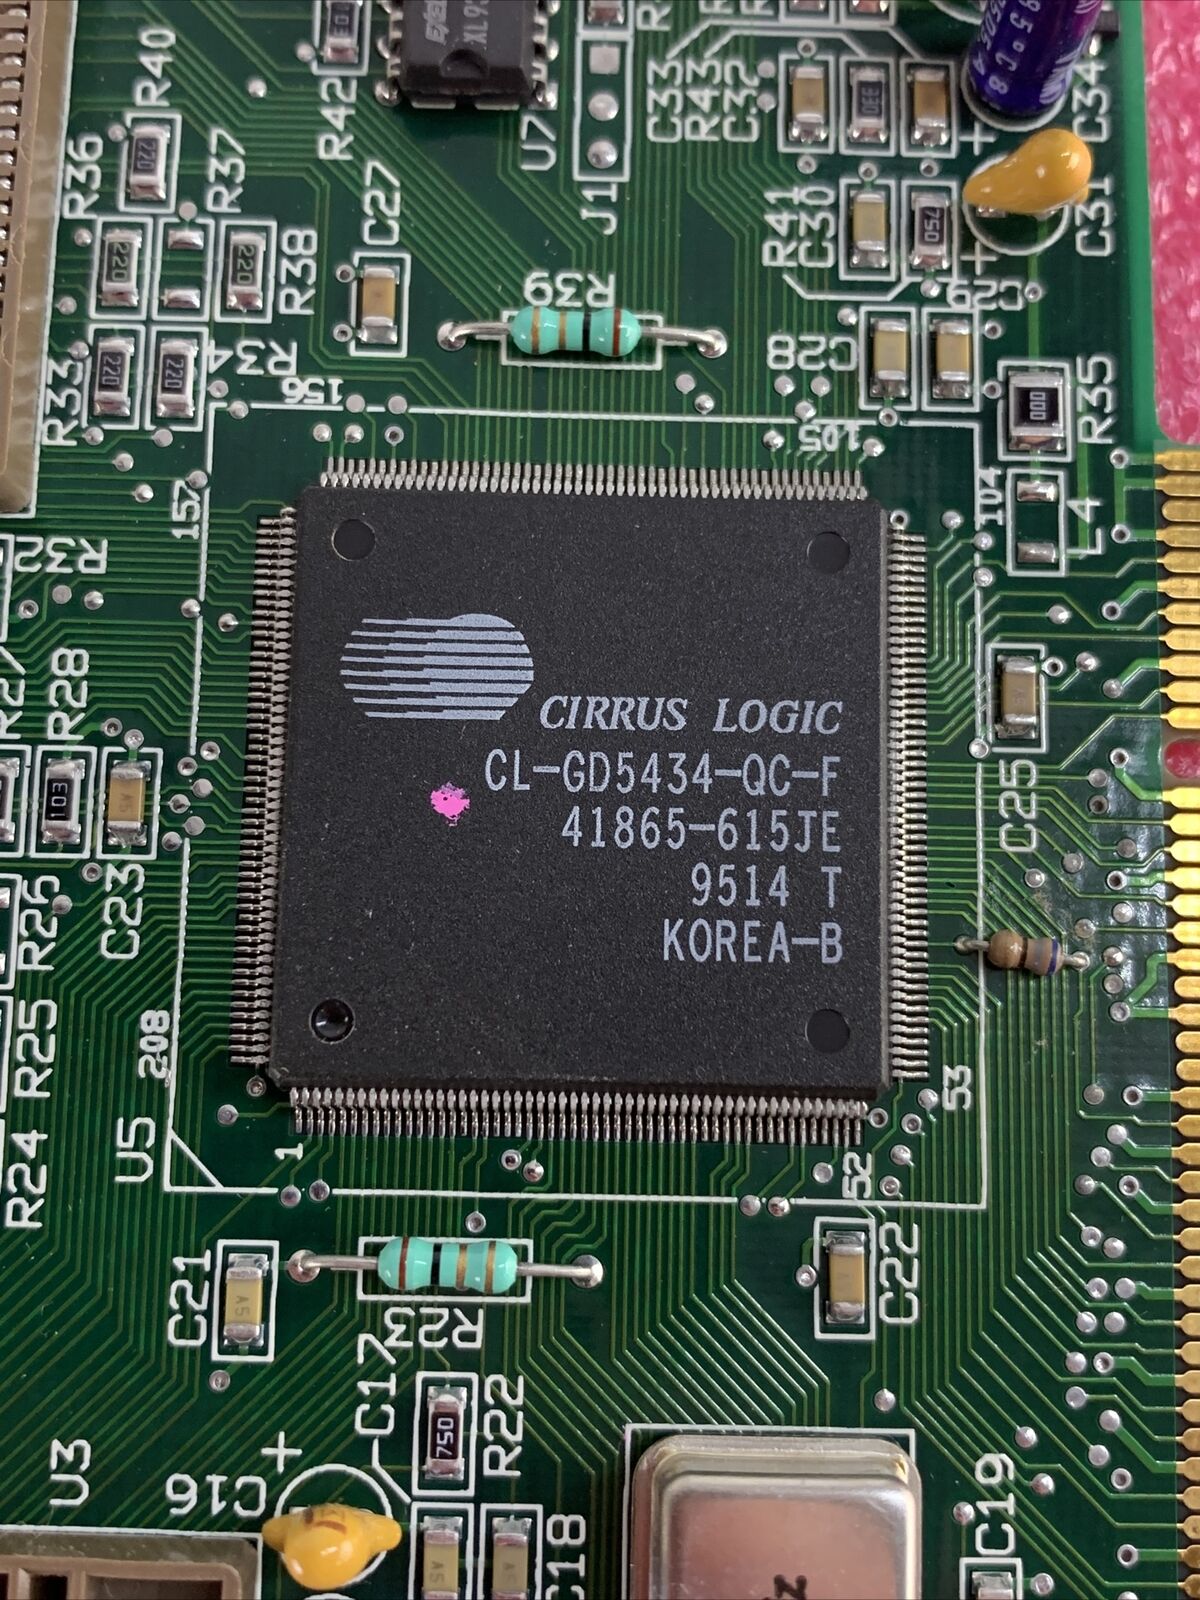 STB SYSTEMS CIRRUS LOGIC CL-GD5430-QC-C 210-0149-002 PCI VGA HORIZON+ Rev B